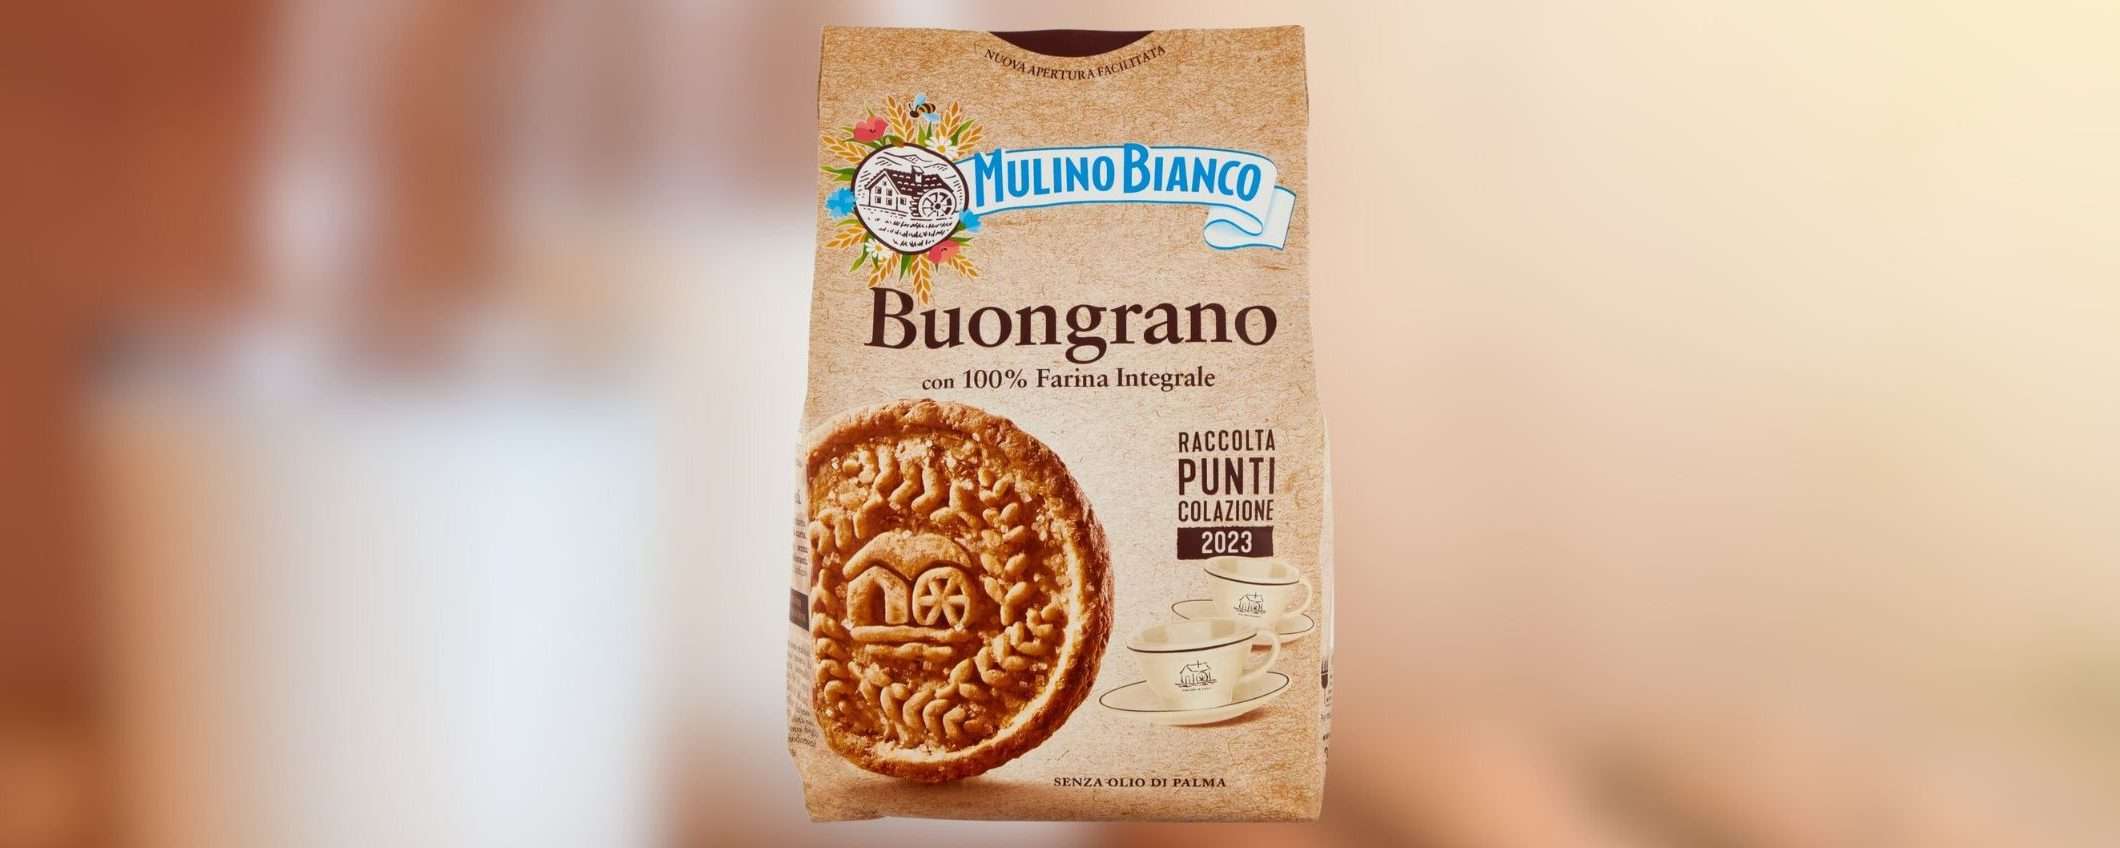 Biscotti MULINO BIANCO Buongrano con Farina Integrale a 1,19€: SCONTO del 54% (Amazon)